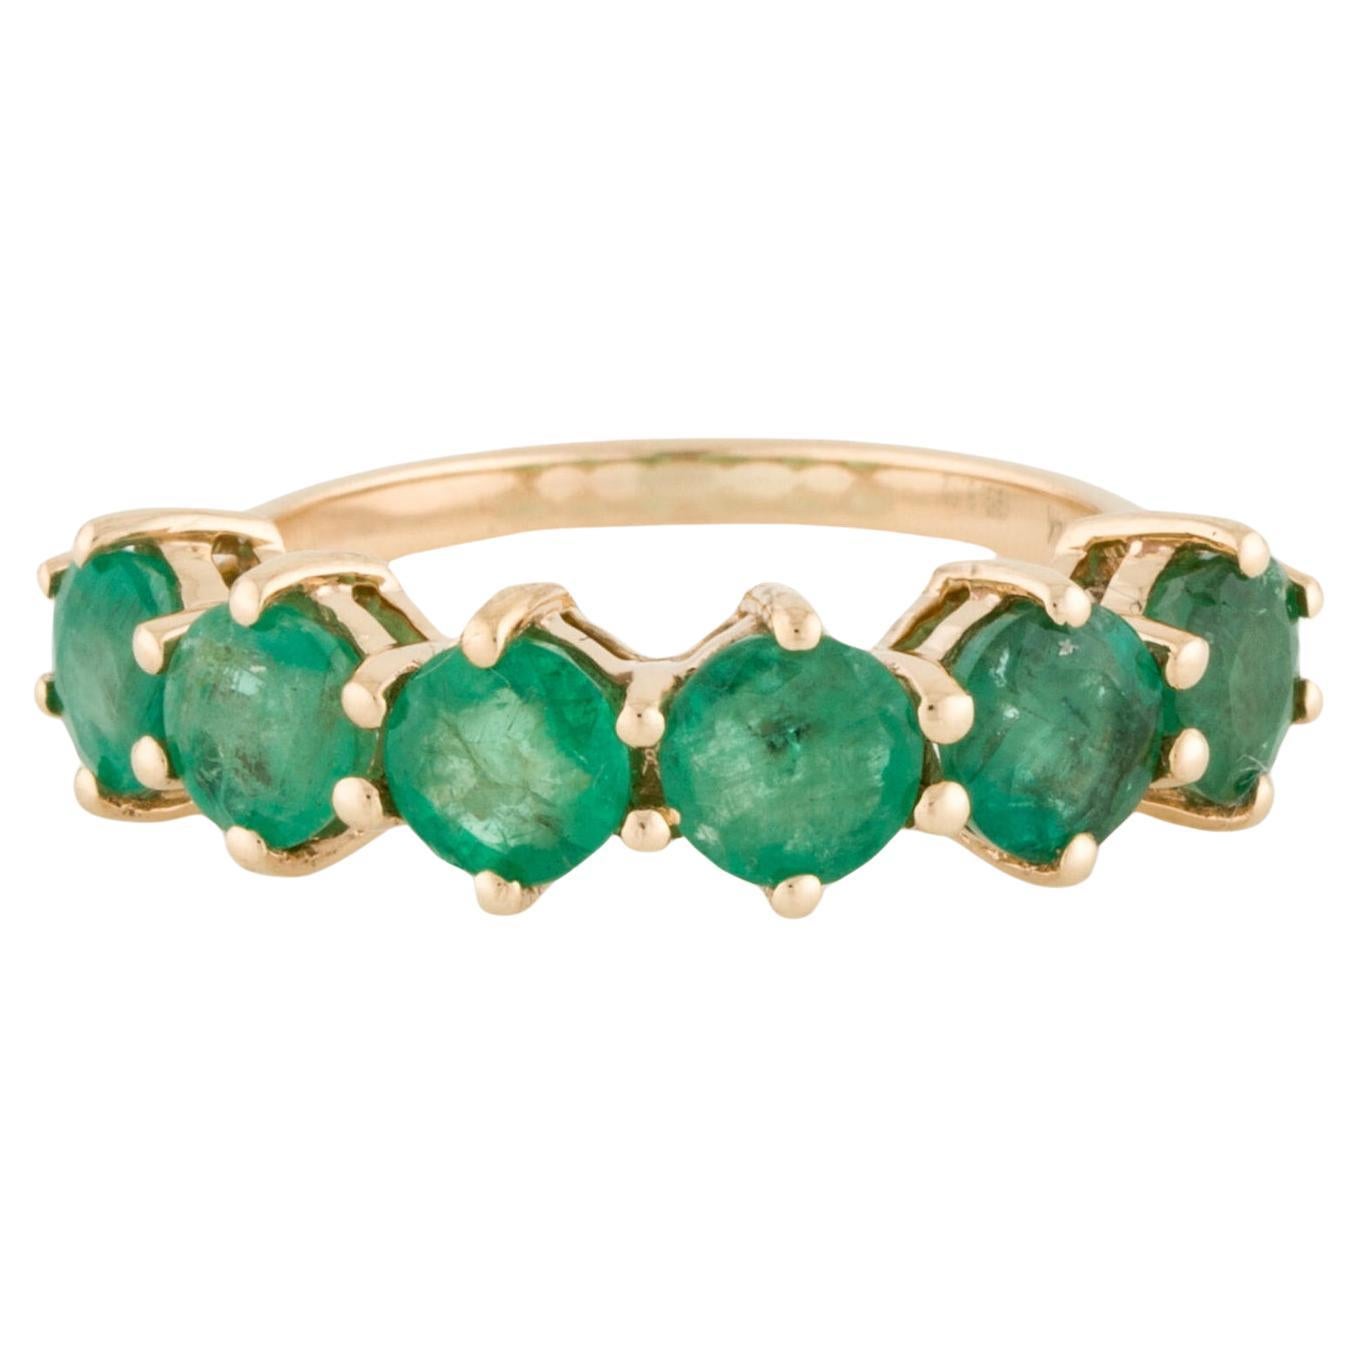 14K Smaragd Band Ring 2.29ctw - Größe 6.75 - Timeless Elegance, luxuriöses Design